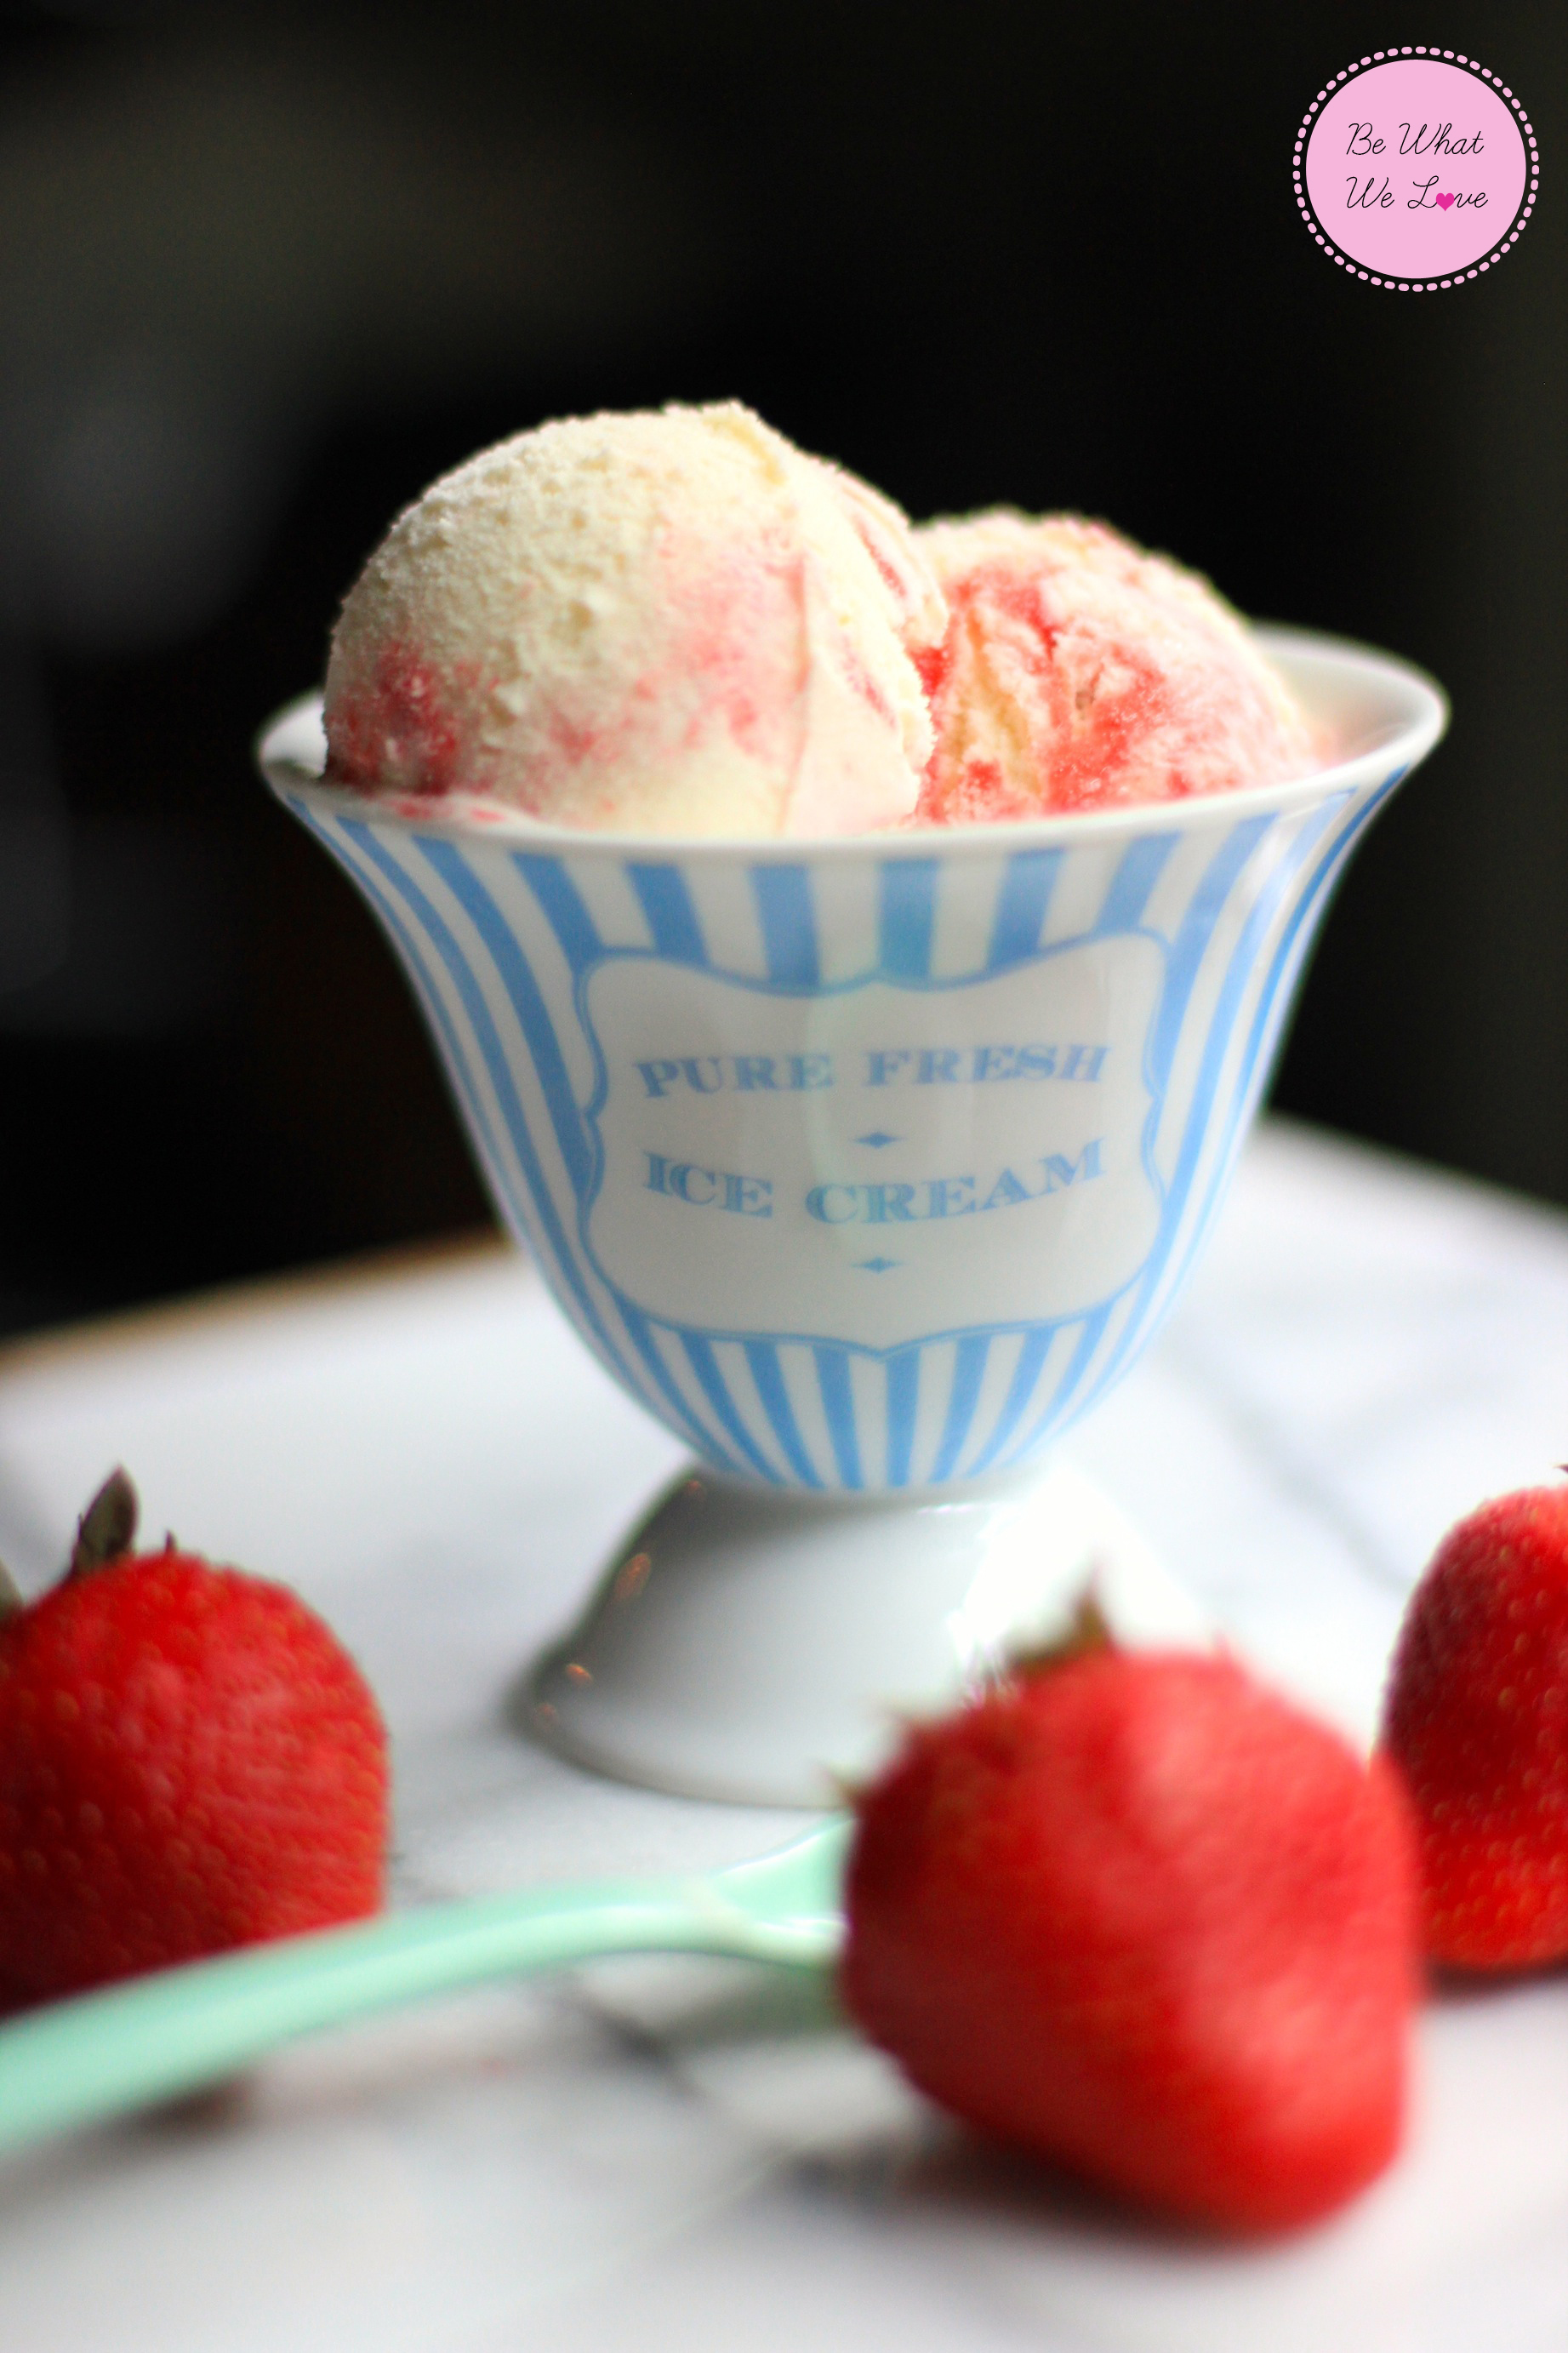 Vanilla Strawberry Swirl Ice Cream | Be What We Love recipe